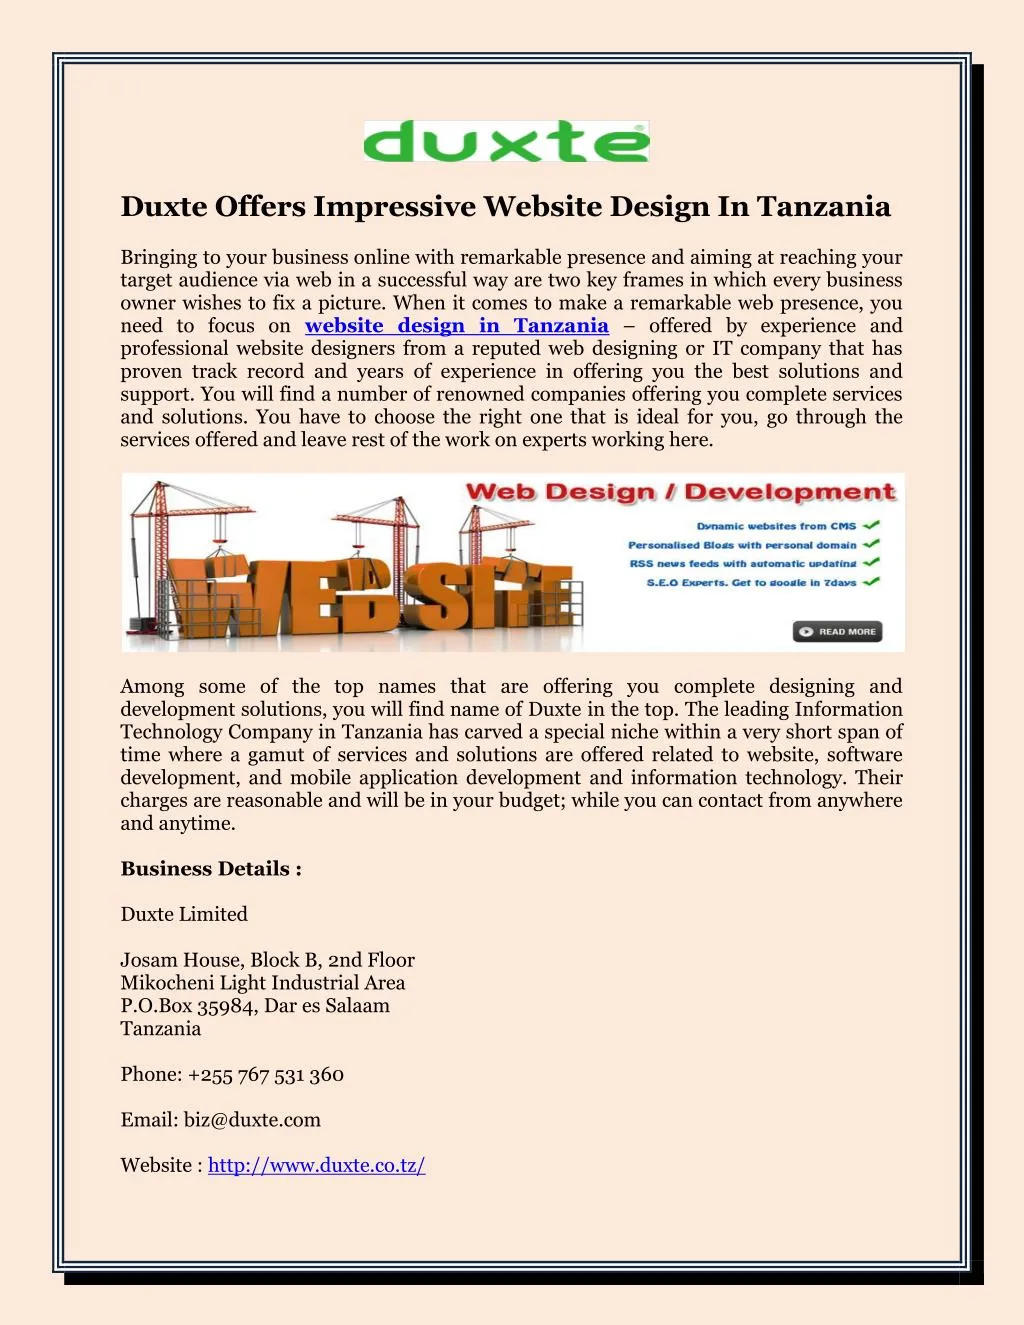 duxte offers impressive website design